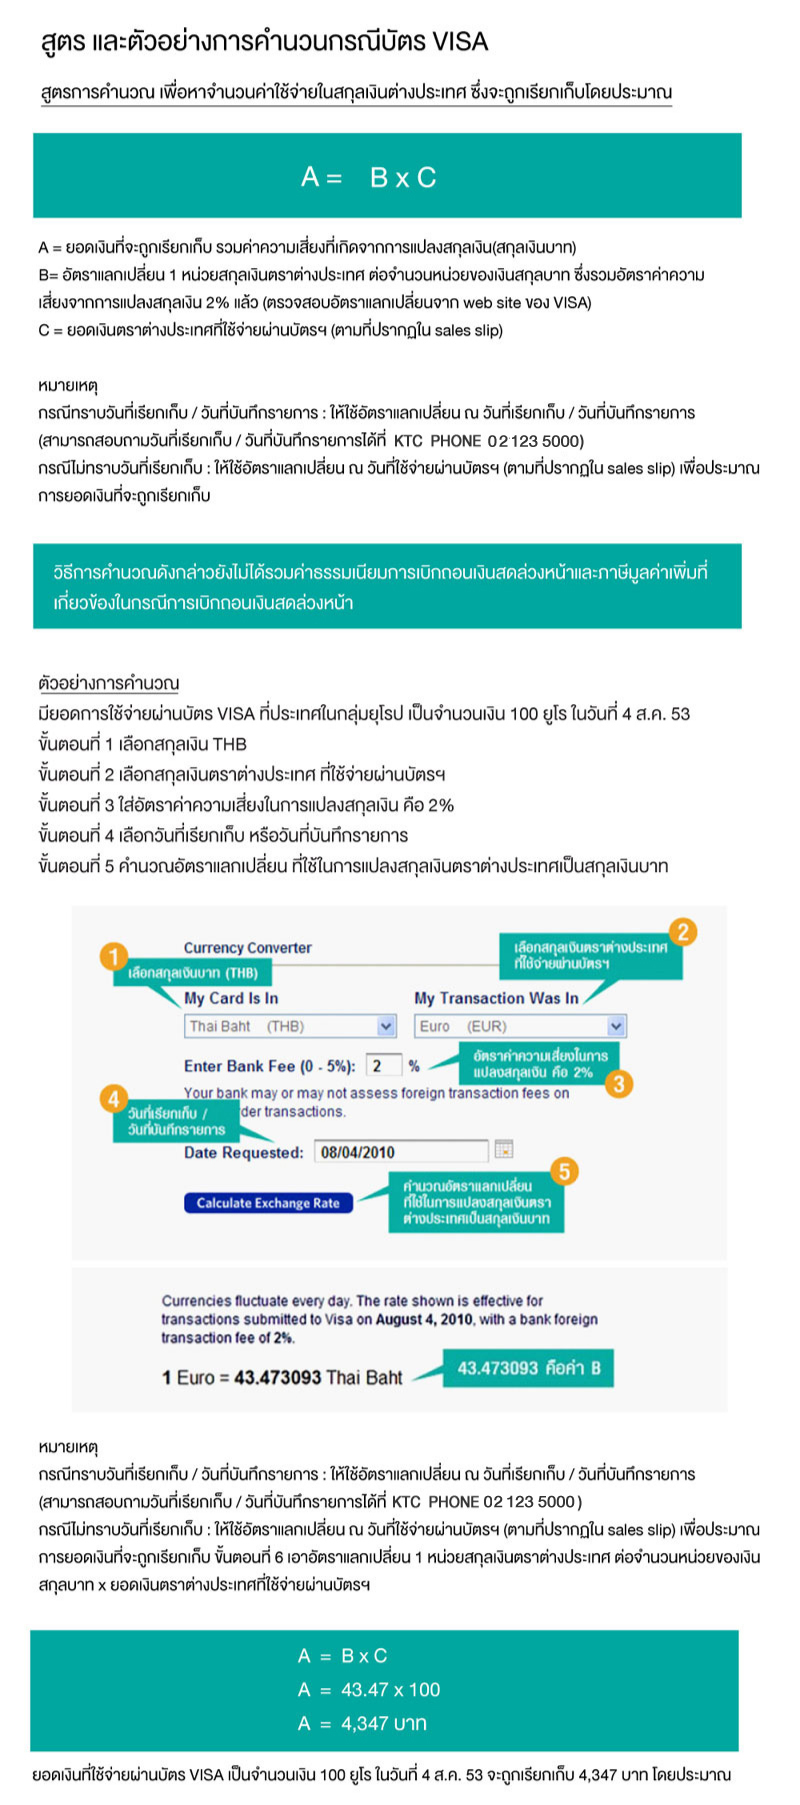 ค่าความเสี่ยงจากการแปลงสกุลเงินต่างประเทศ - บริษัท บัตรกรุงไทย จำกัด (มหาชน)